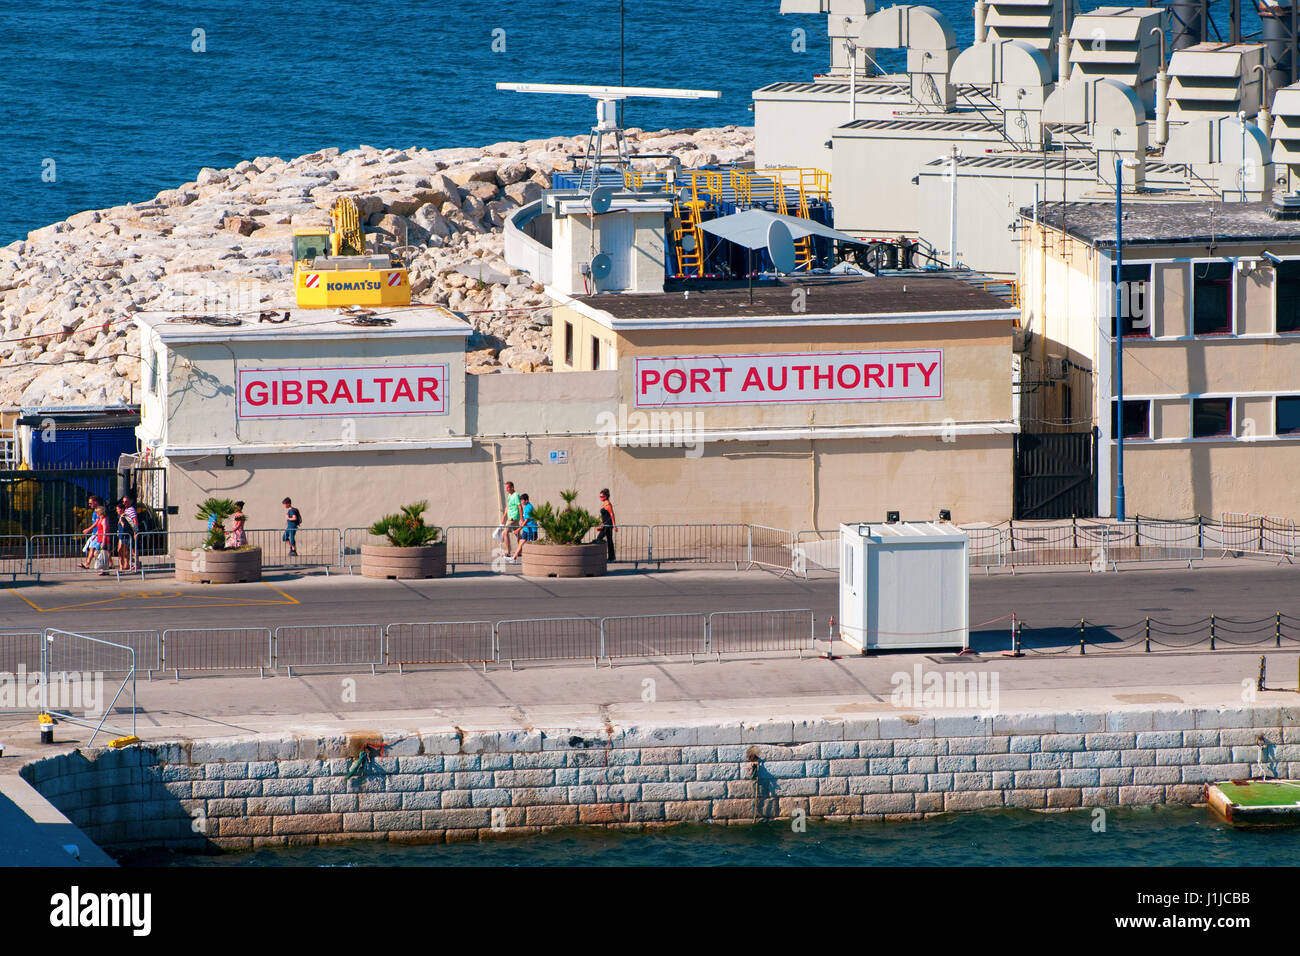 Willkommen Sie bei Gibraltar, Gibraltar Port Authority und Dock, Passagier Hafeneinfahrt und nur Weg in die Stadt per Schiff oder Boot andocken Stockfoto